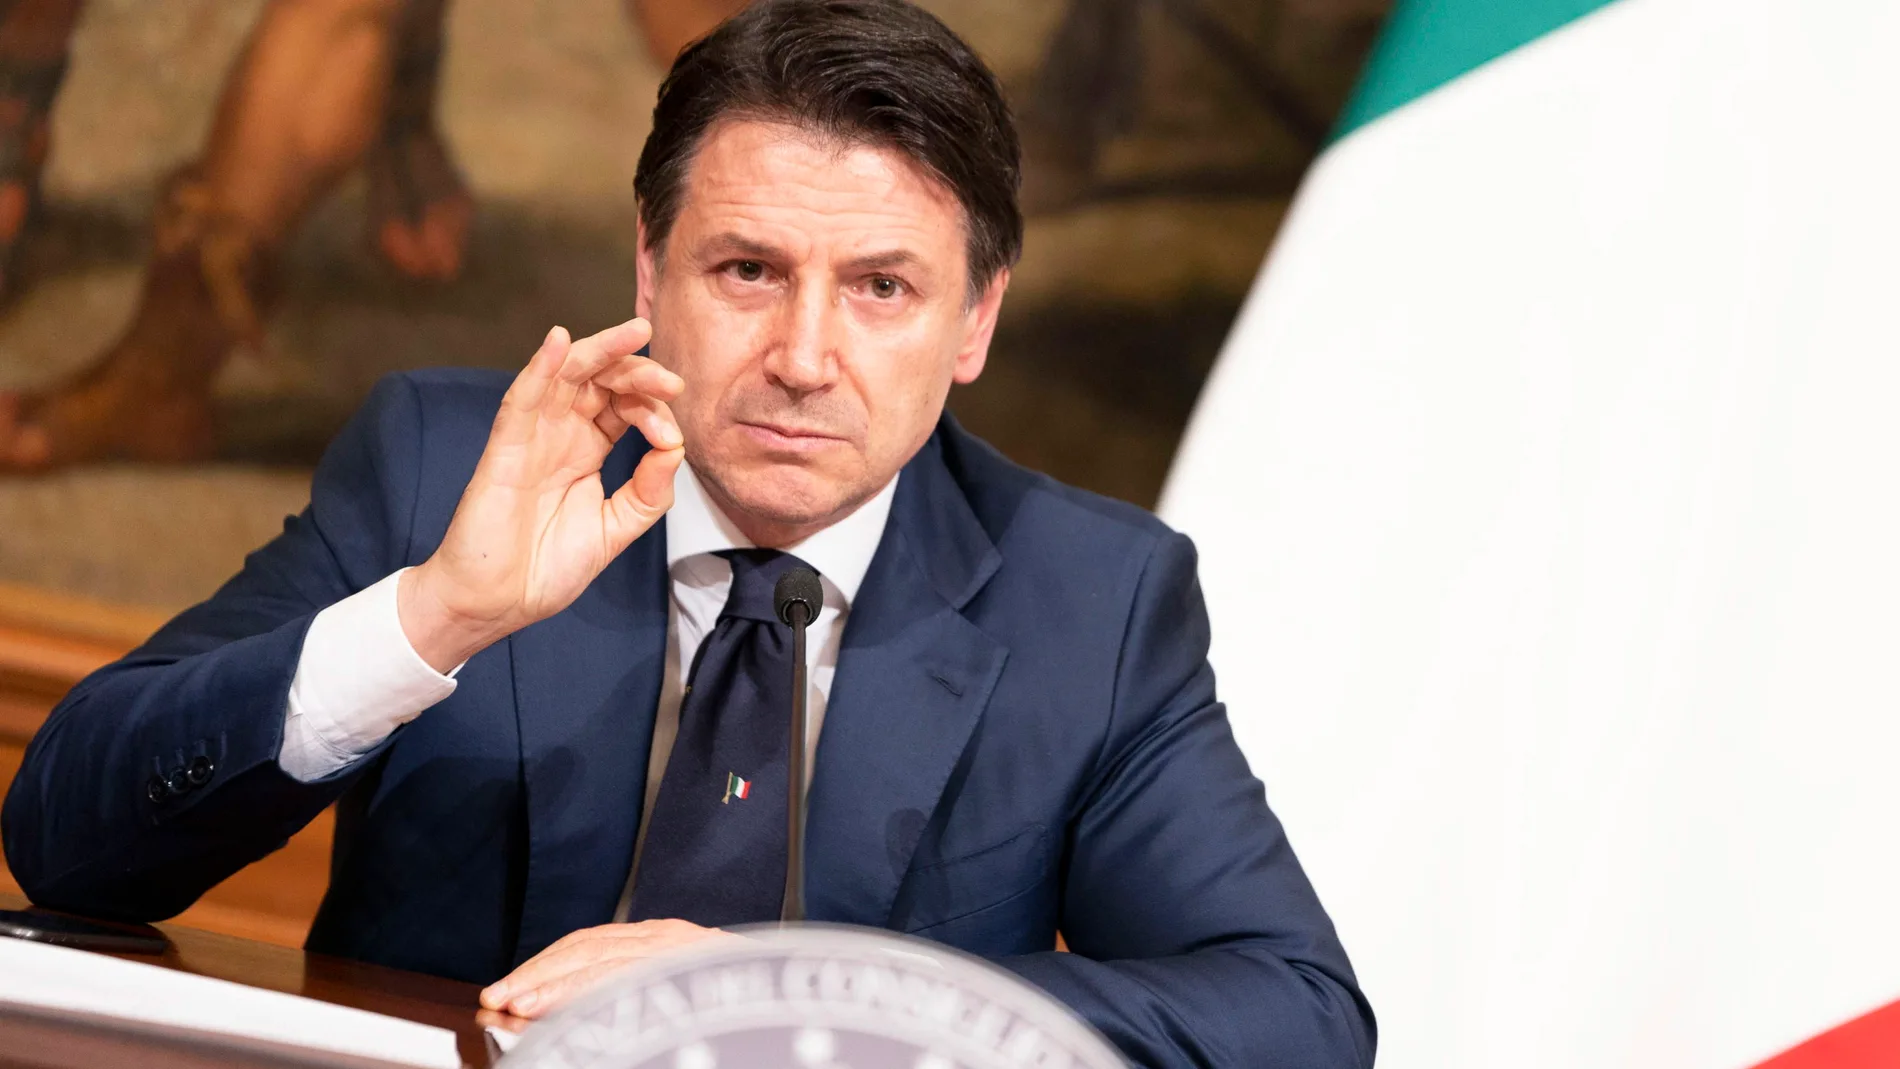 Italian PM Conte press conference